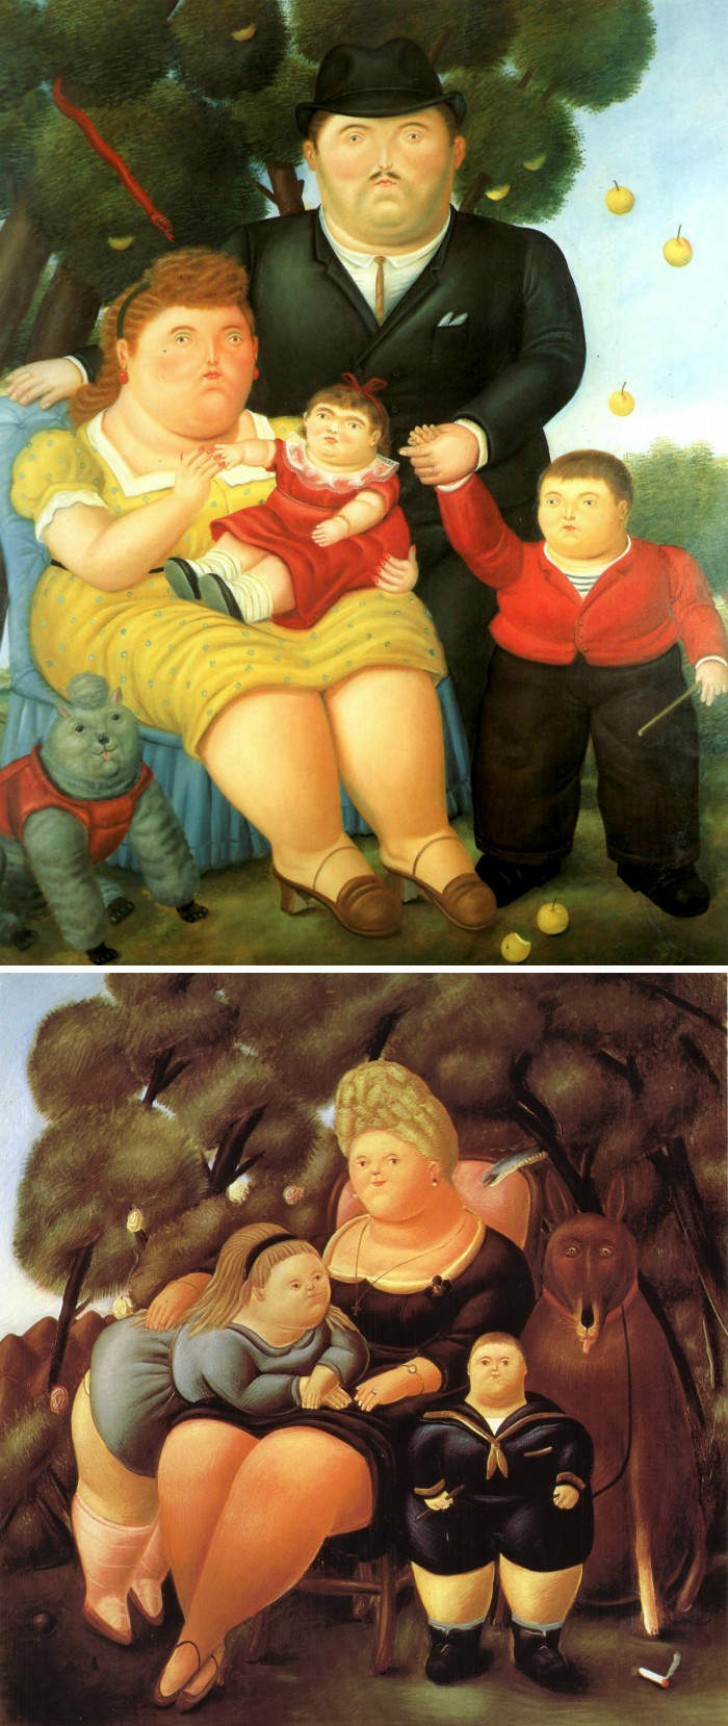 Si les personnages peints sont potelés et fiers de l'être, ce ne peut être qu'un Fernando Botero !